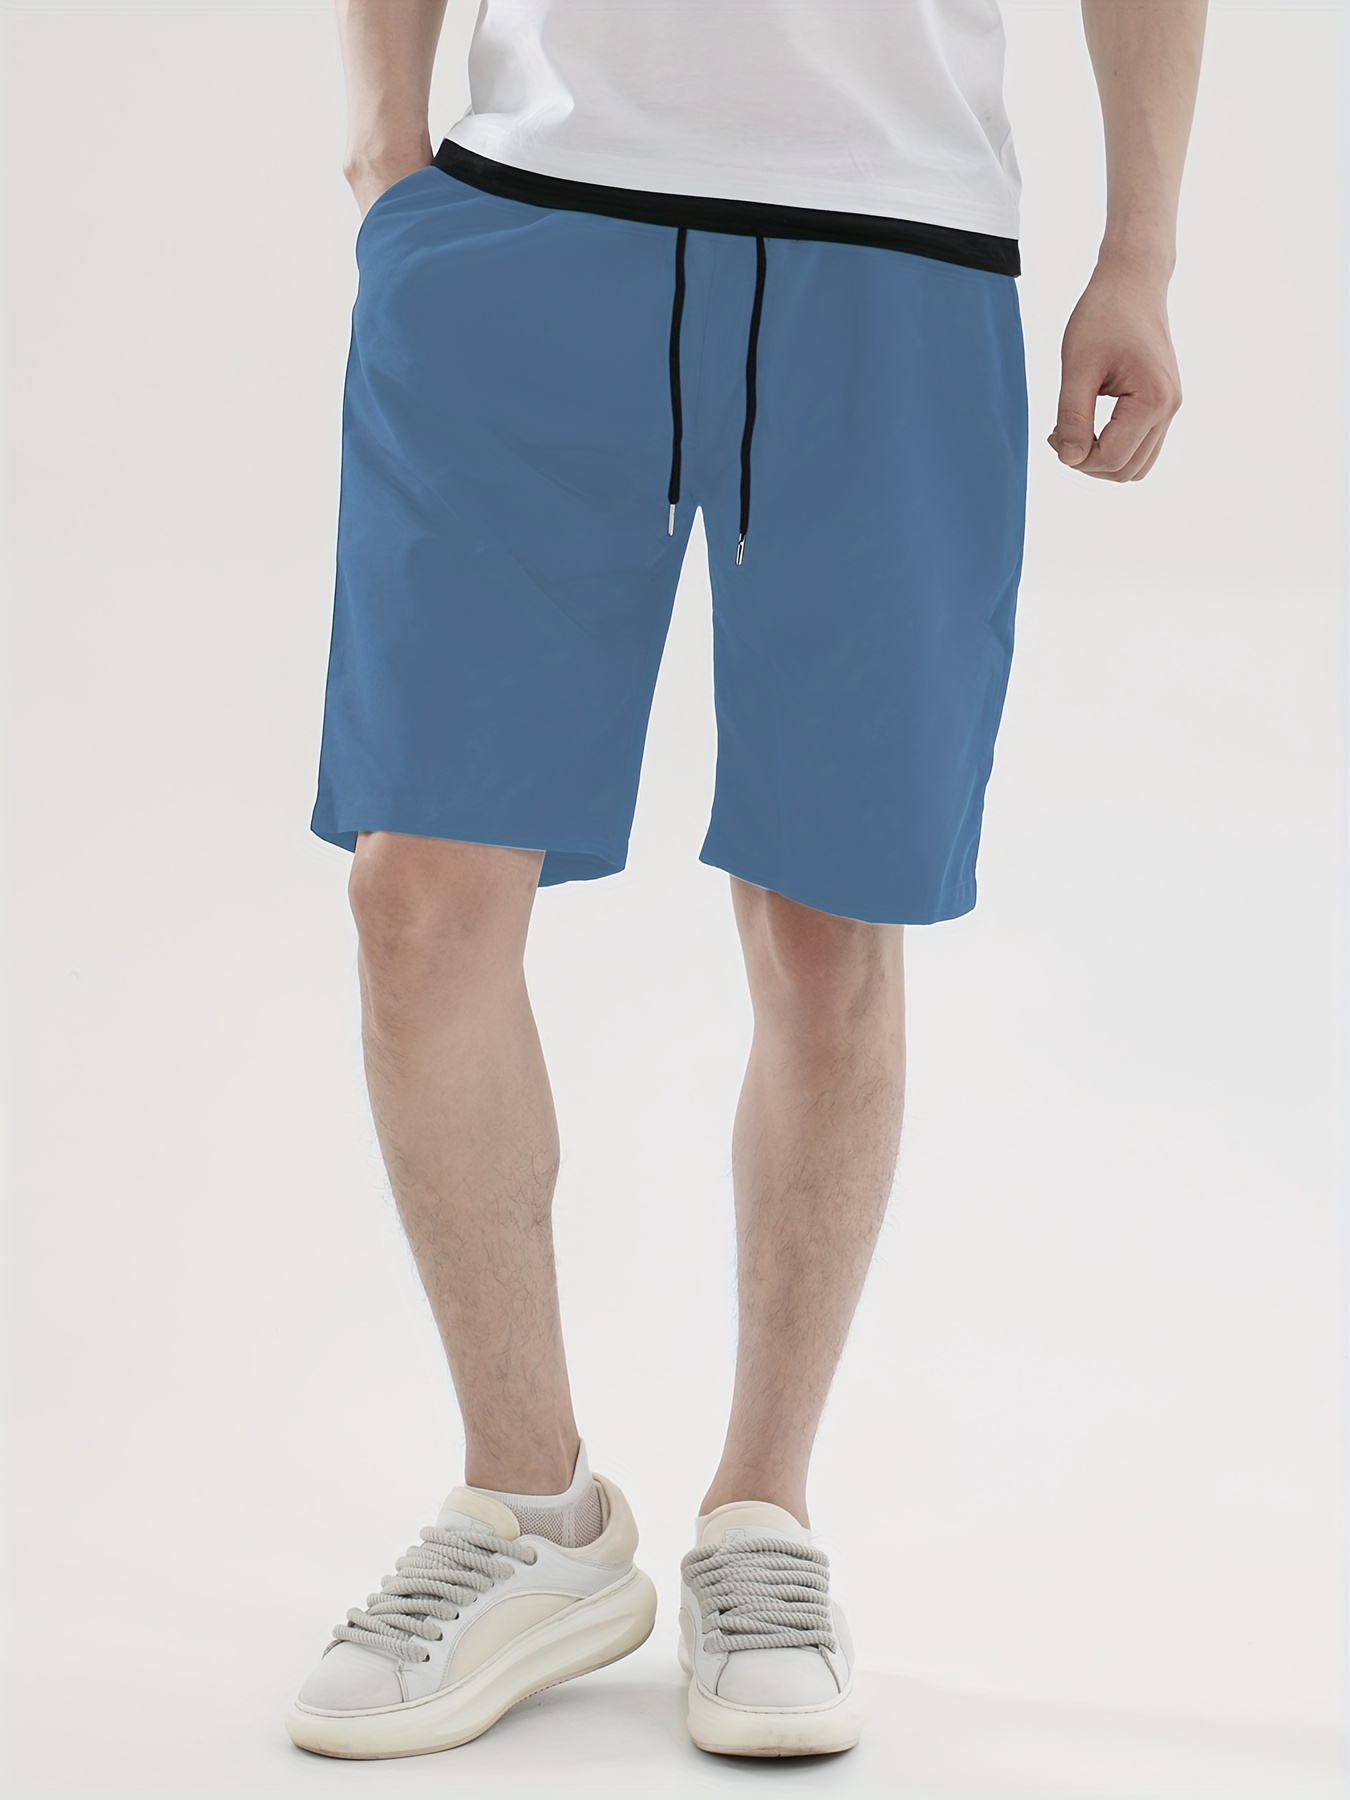 BLWOENS Pantalones cortos de moda casuales para hombres